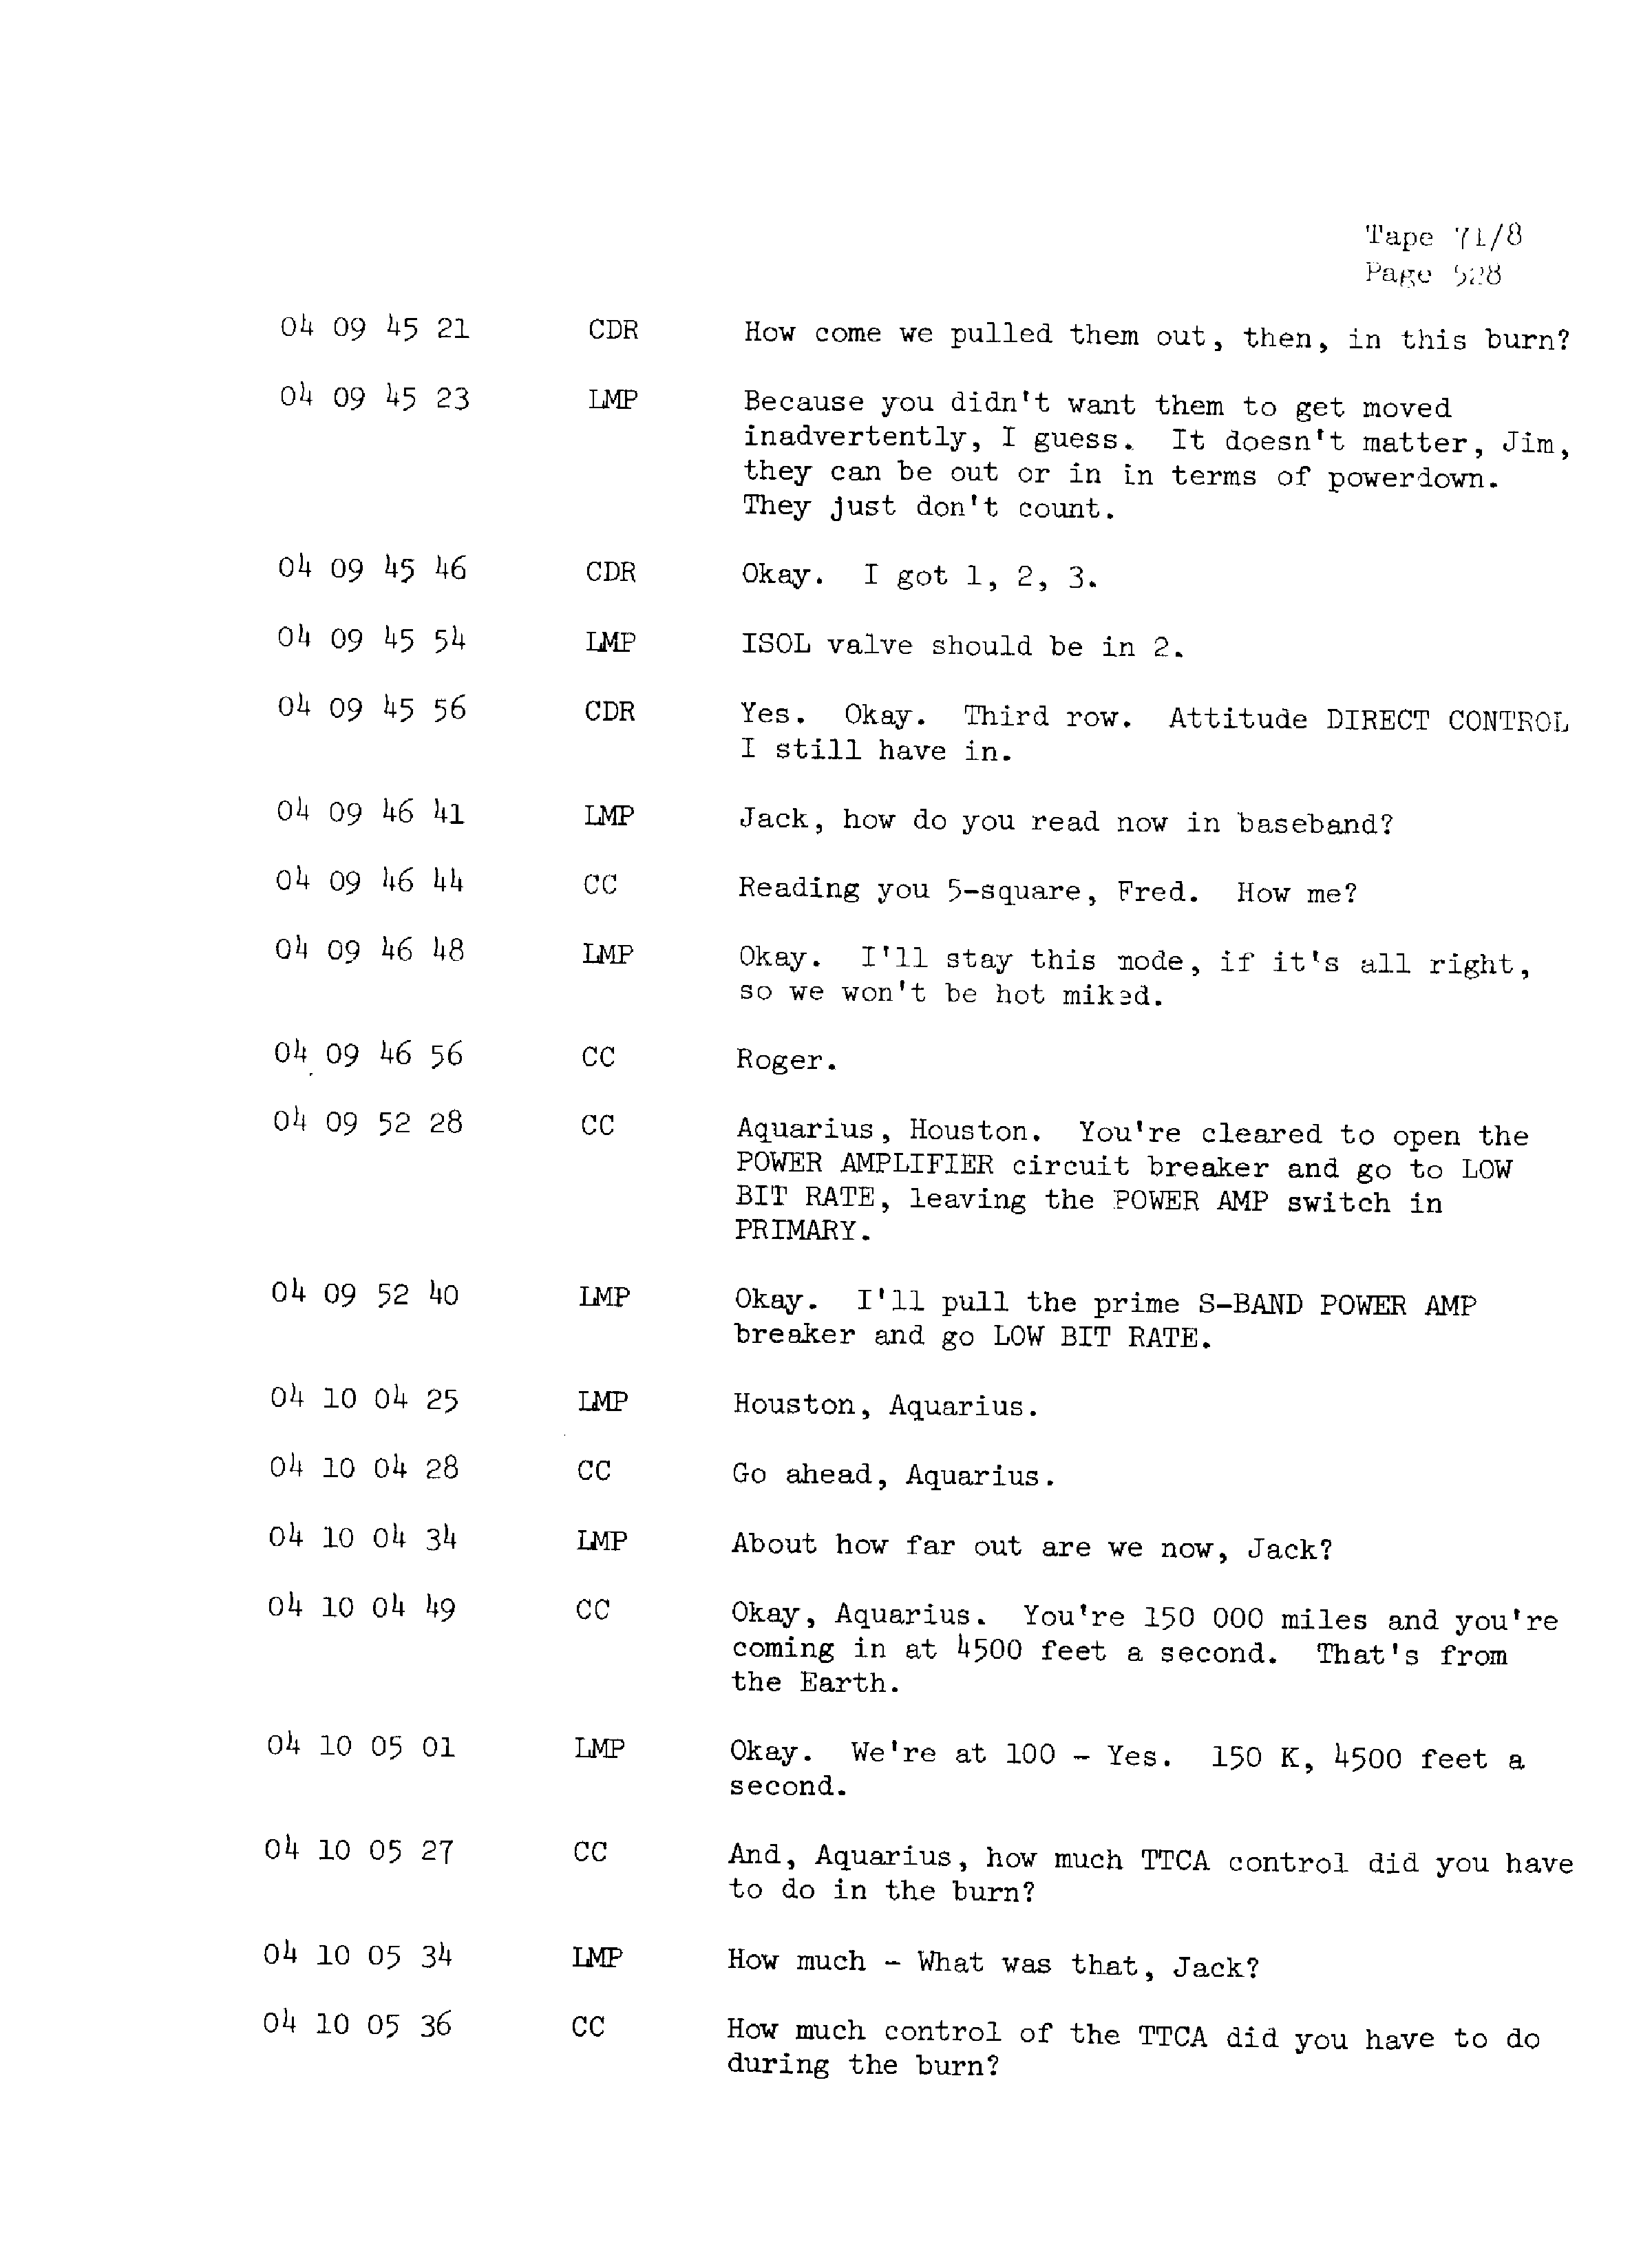 Page 535 of Apollo 13’s original transcript